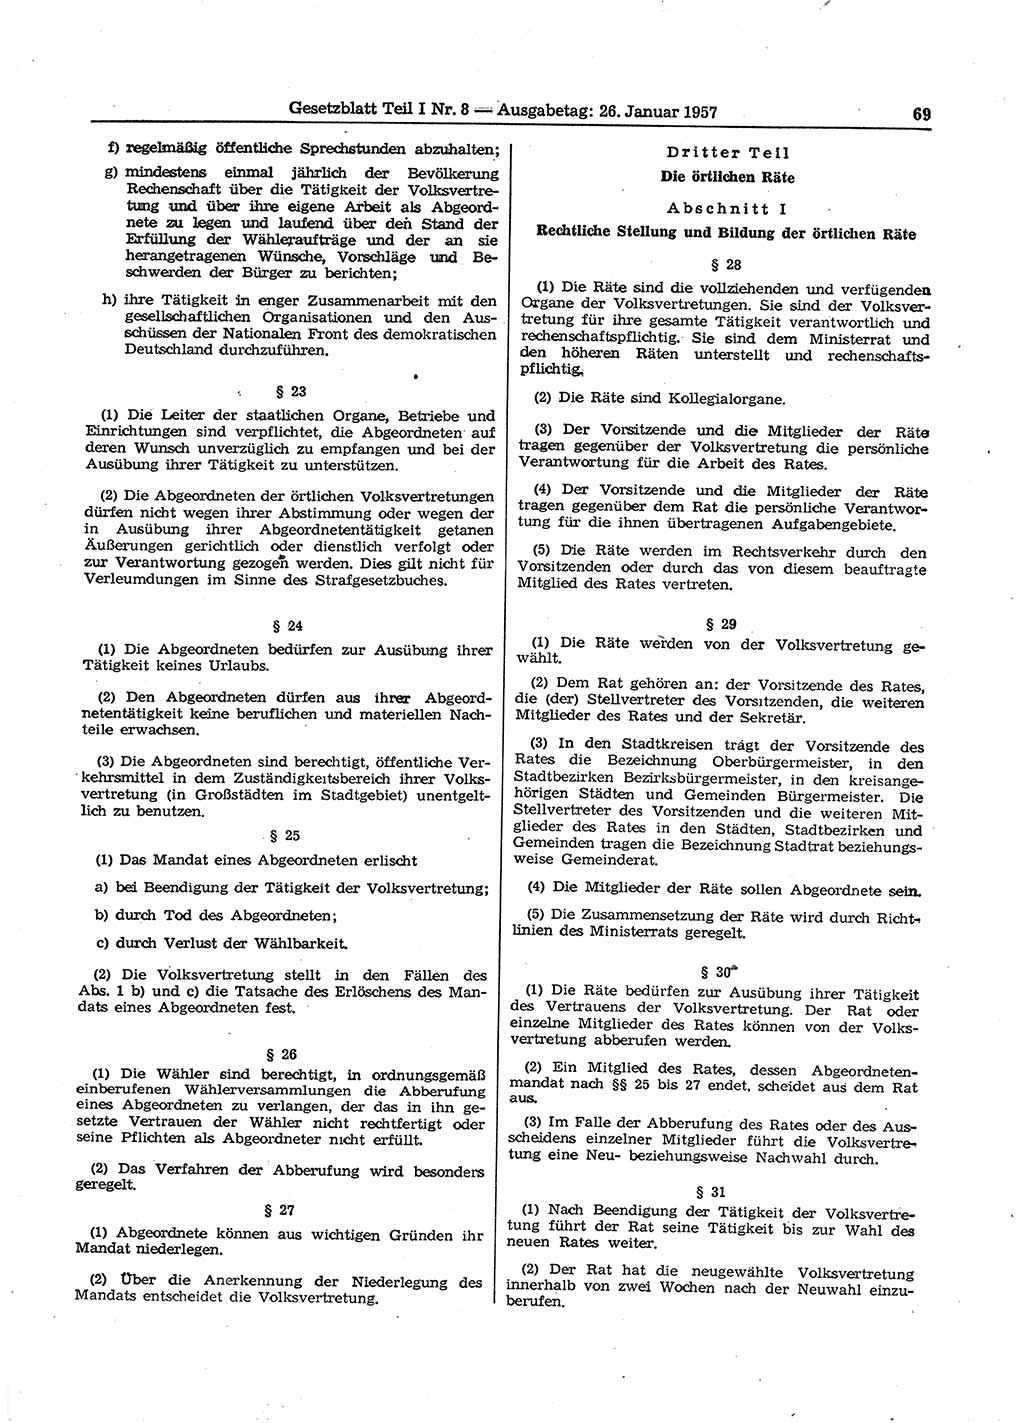 Gesetzblatt (GBl.) der Deutschen Demokratischen Republik (DDR) Teil Ⅰ 1957, Seite 69 (GBl. DDR Ⅰ 1957, S. 69)